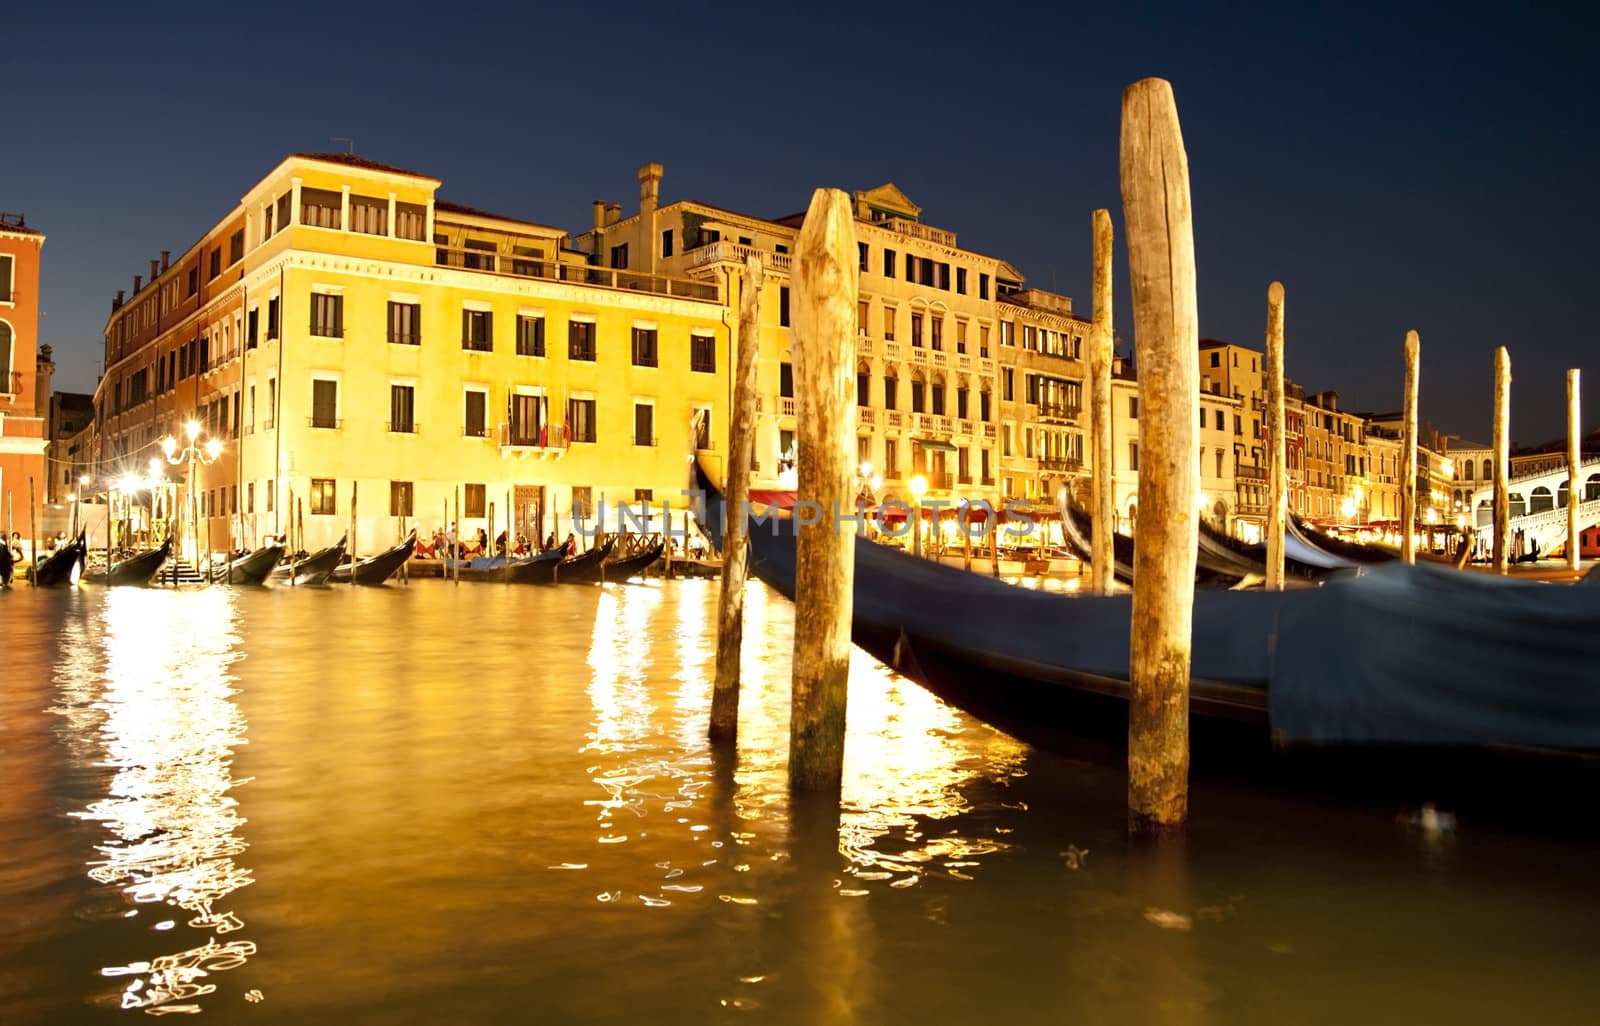 Gondola in Venice by joyfull